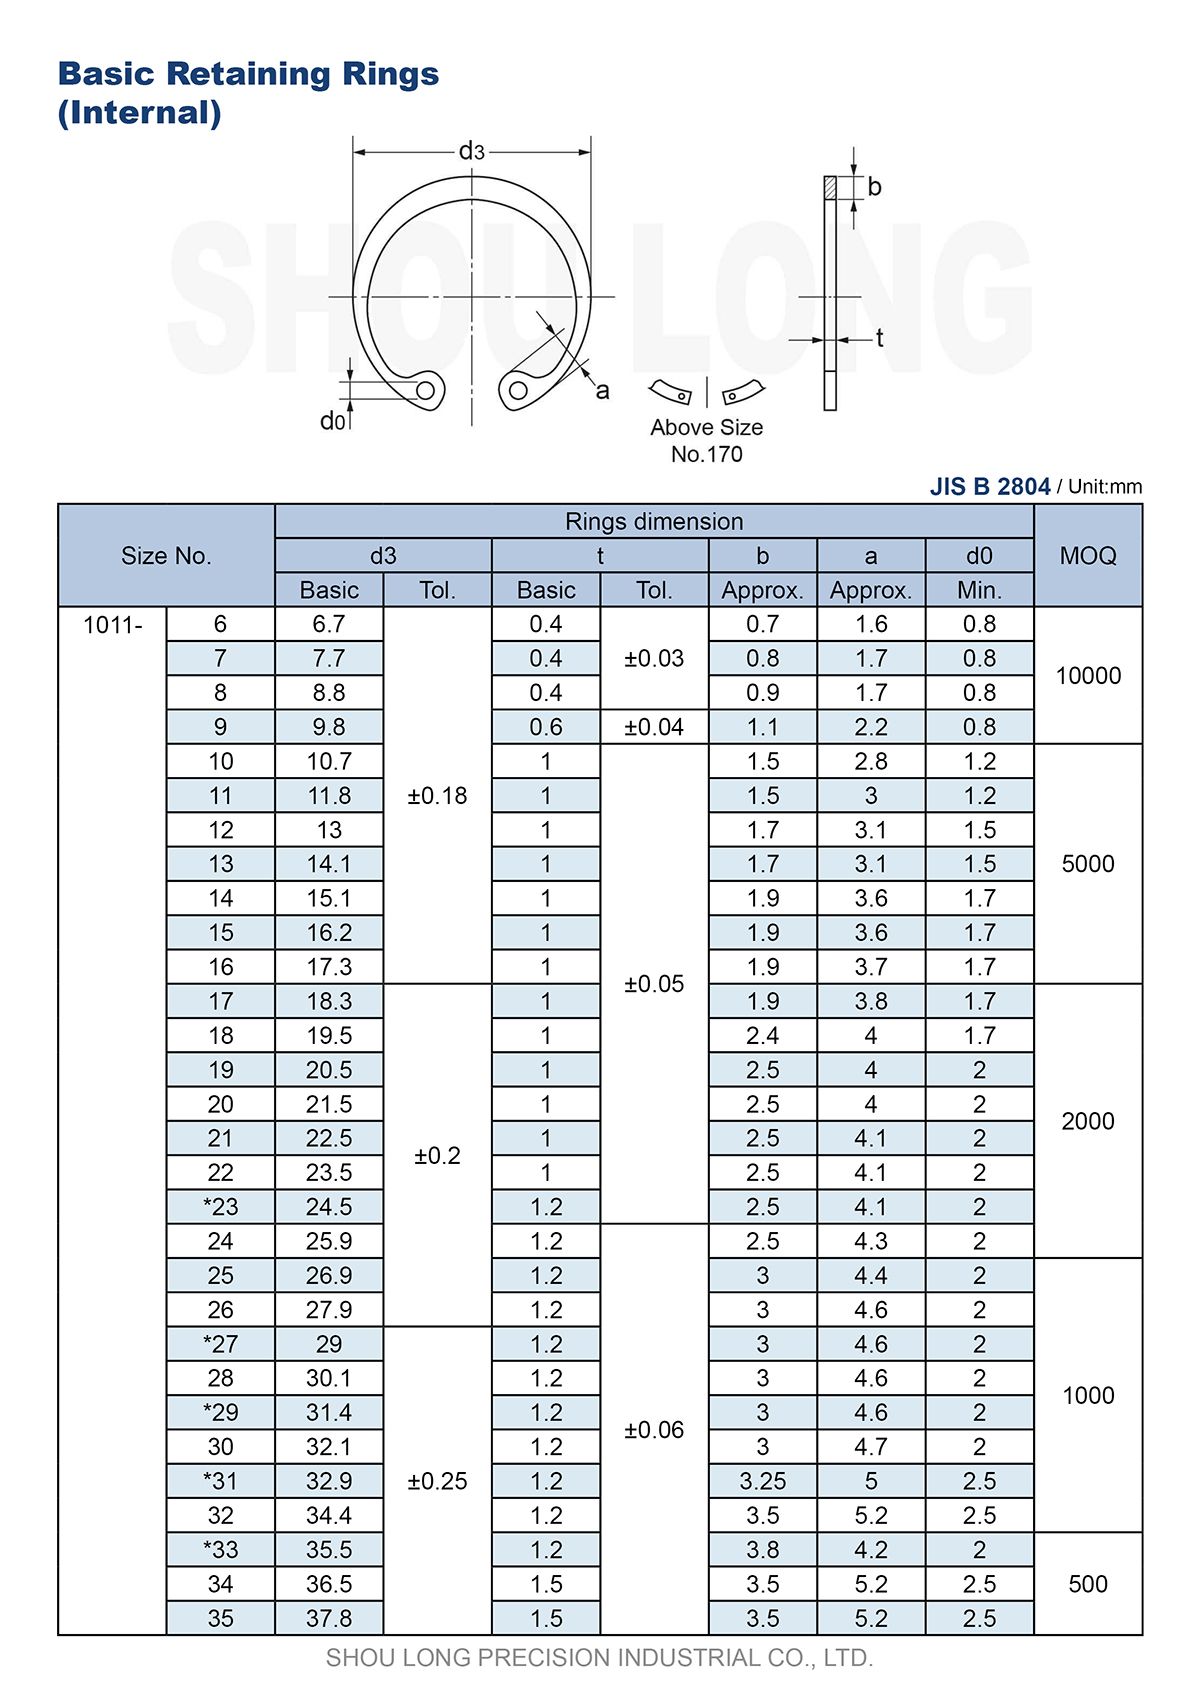 Especificação dos Anéis de Retenção Básicos Métricos JIS para Furos B2804-1